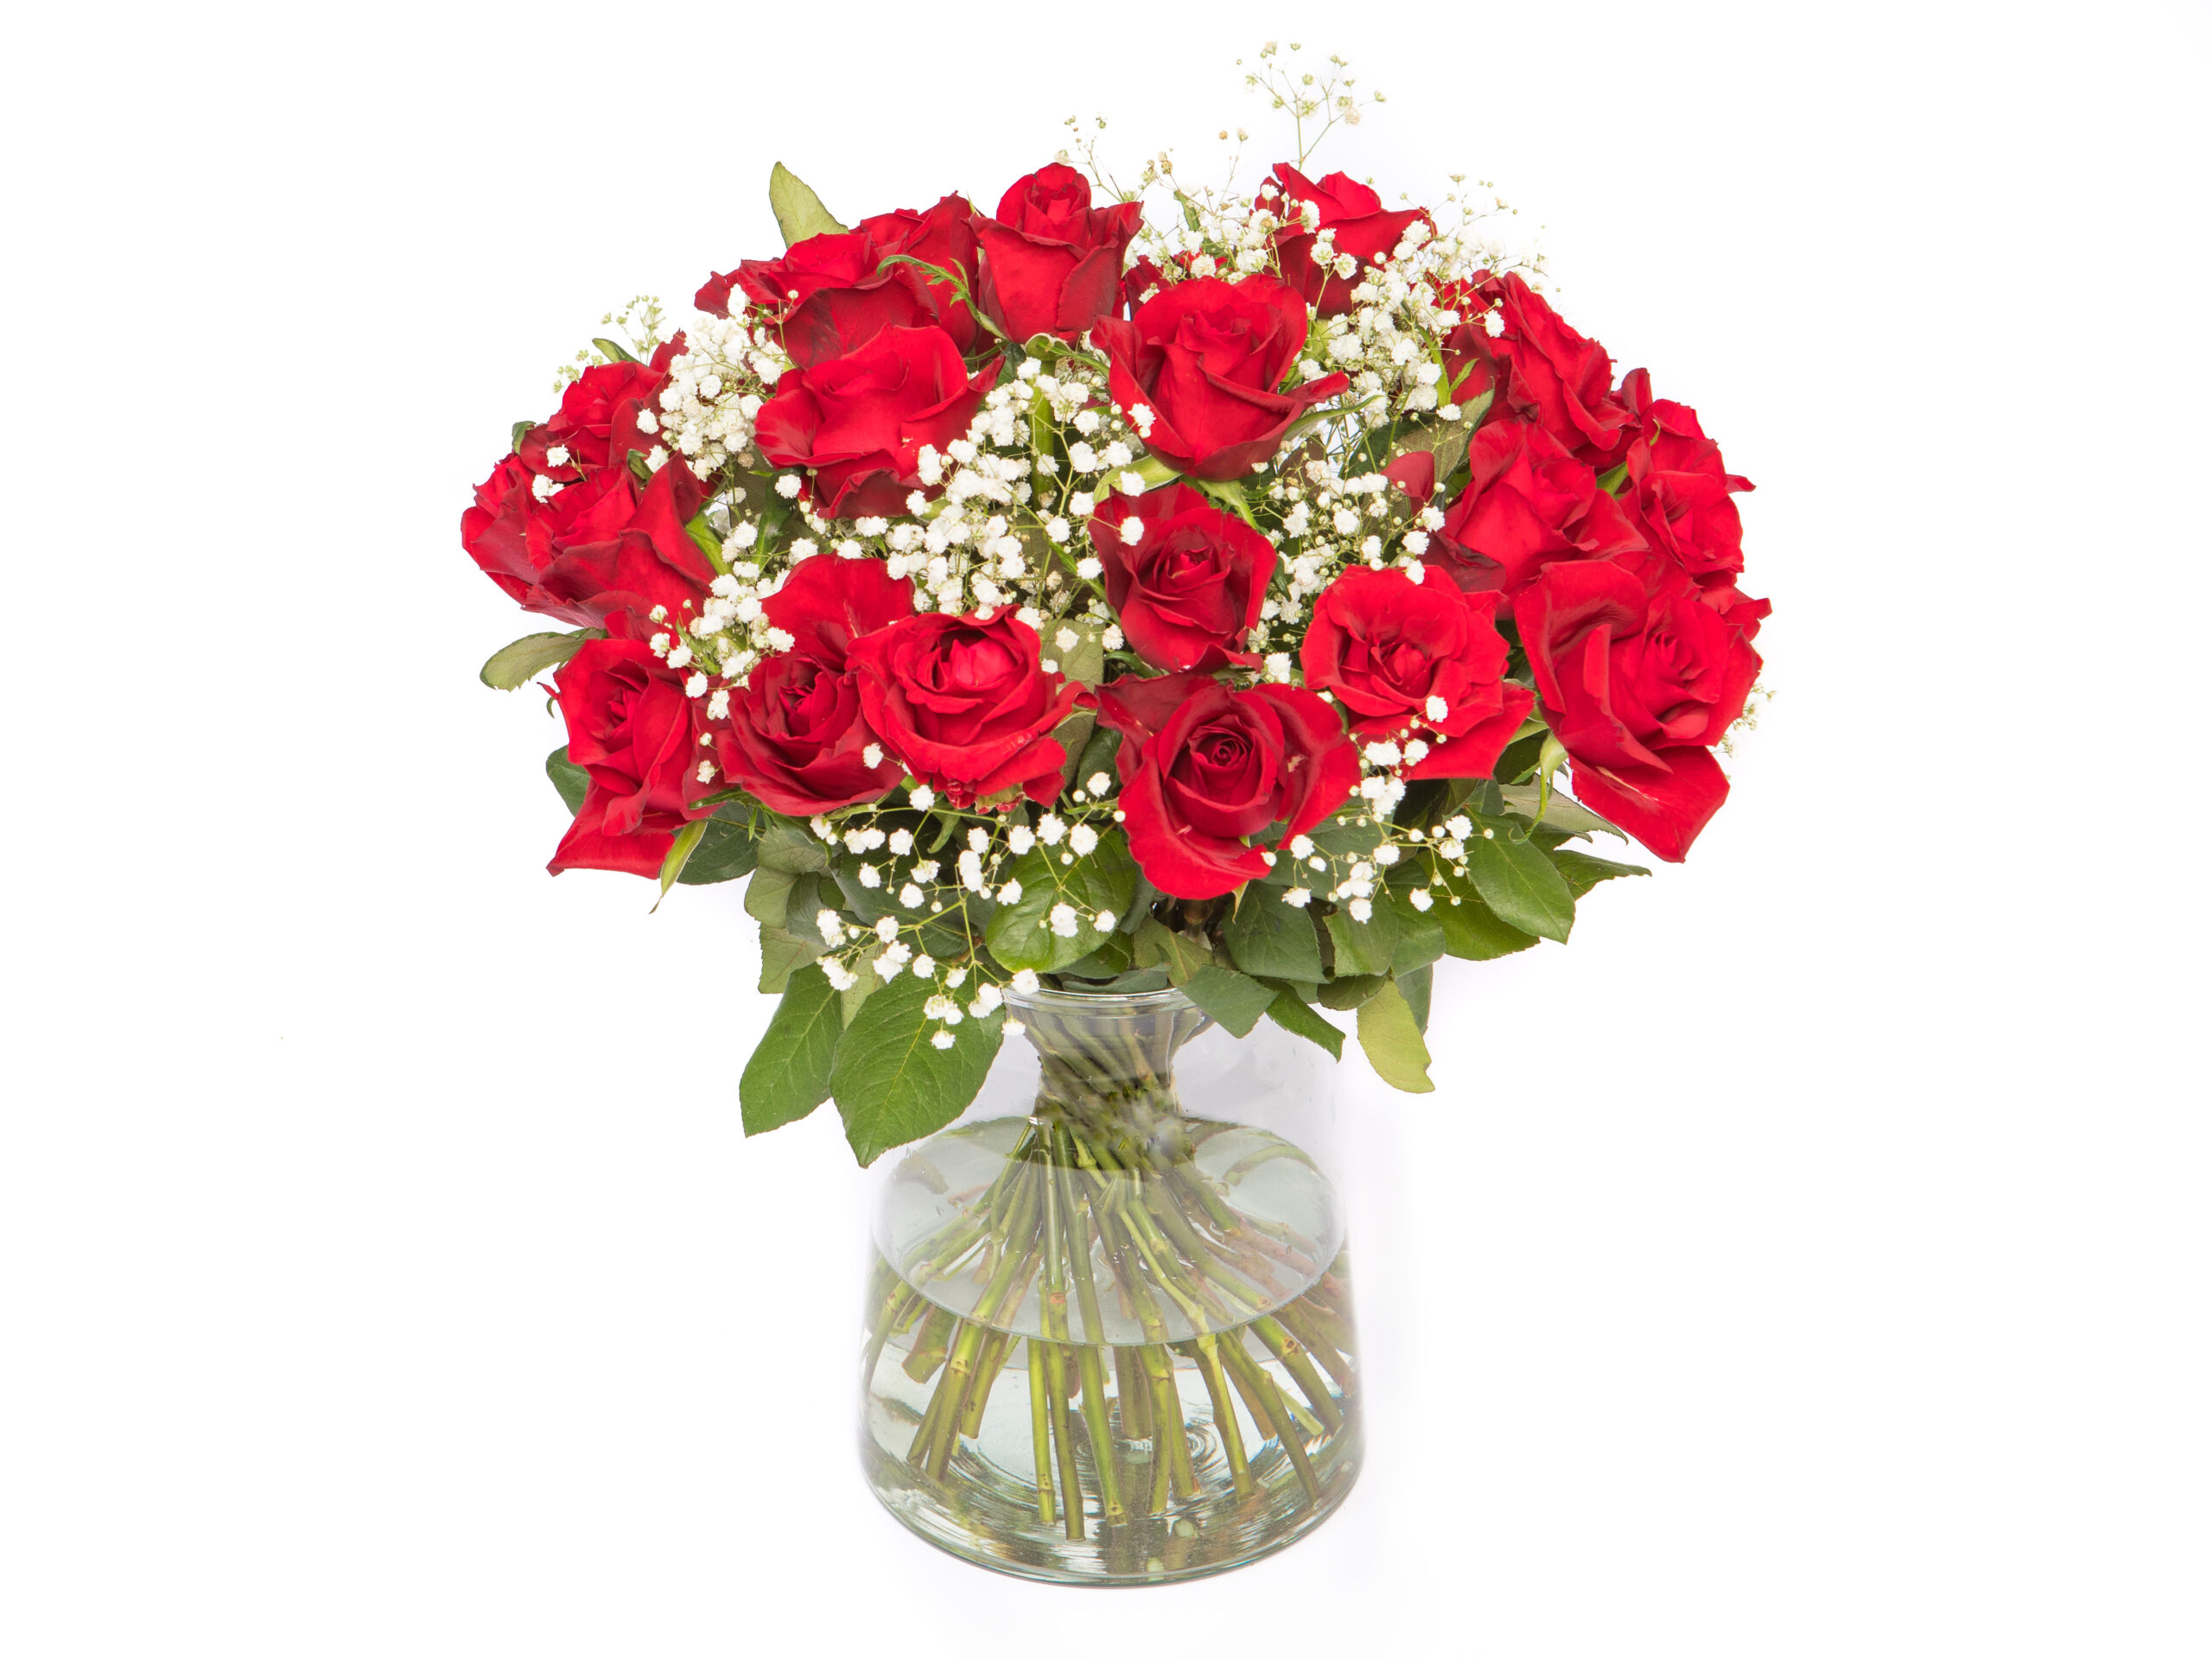 geboren Harmonie Romantiek Rode rozen met gipskruid kopen? De #1 met de laagste prijs!